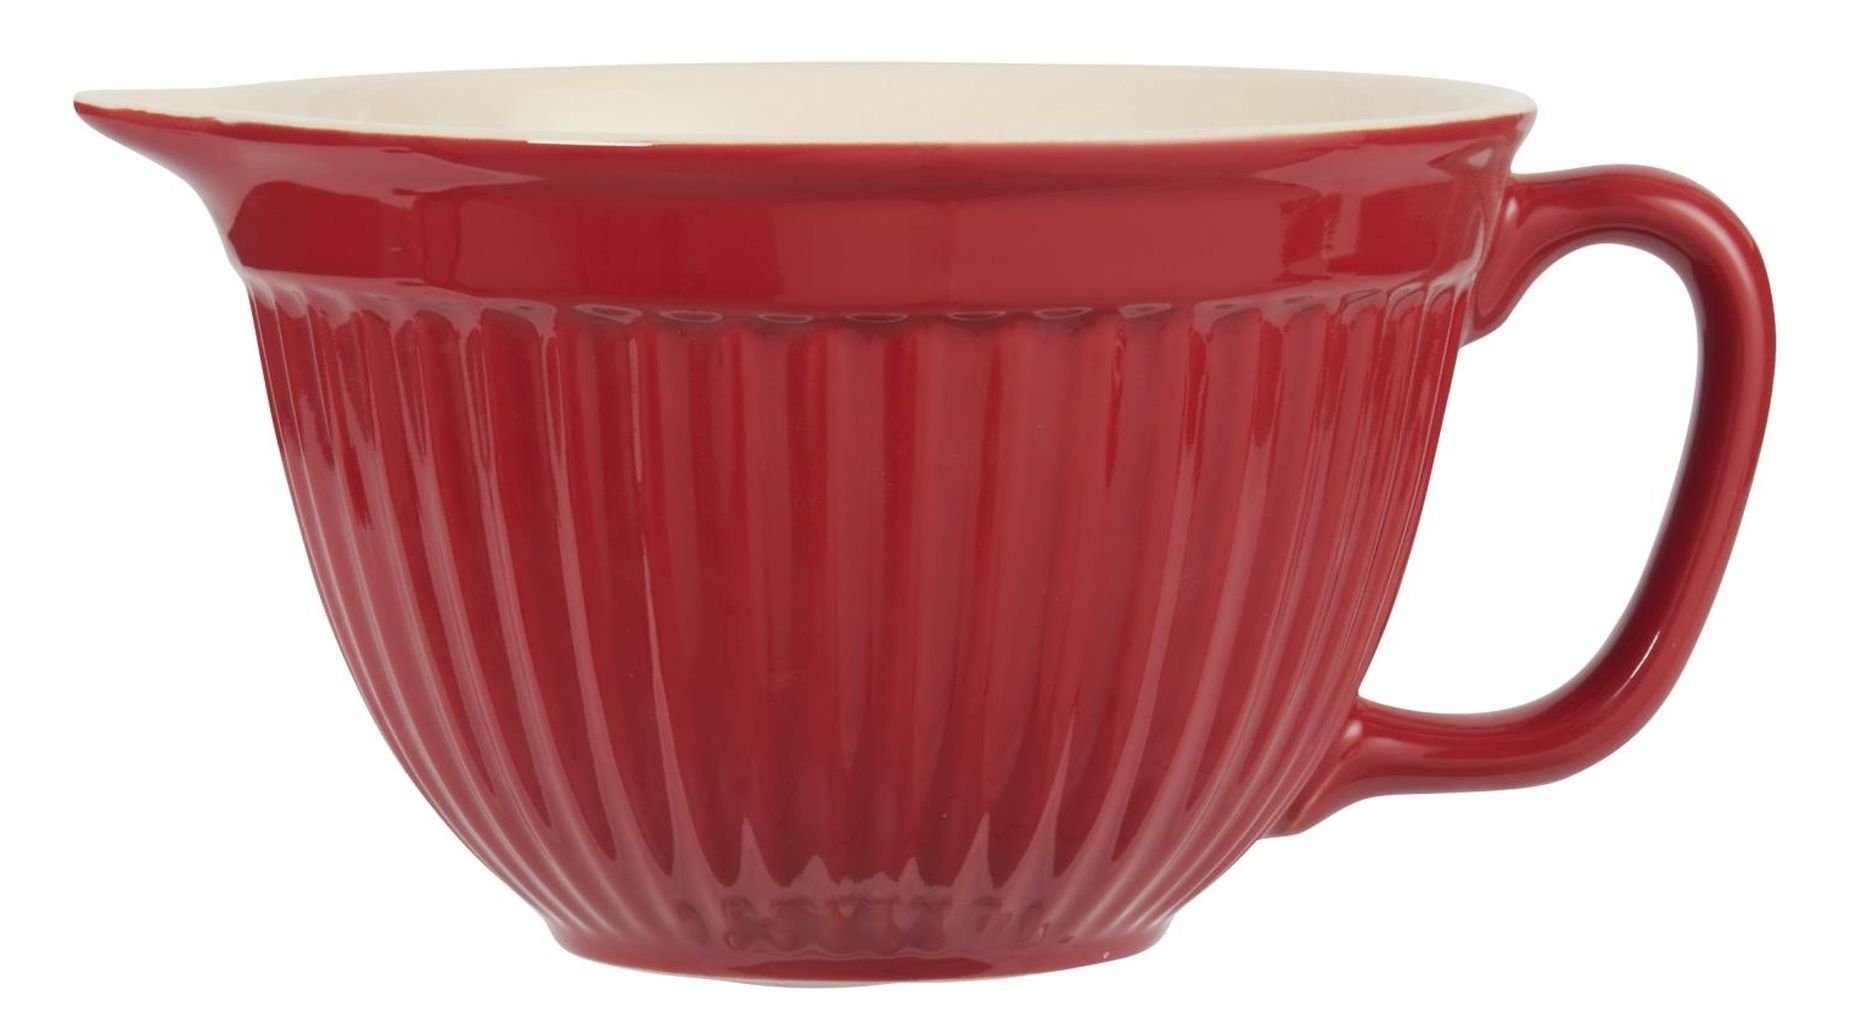 Ib Laursen Rührschüssel Ib Laursen - Rührschüssel Mynte Keramik Rot Strawberry 1,5l (2075-33), Keramik